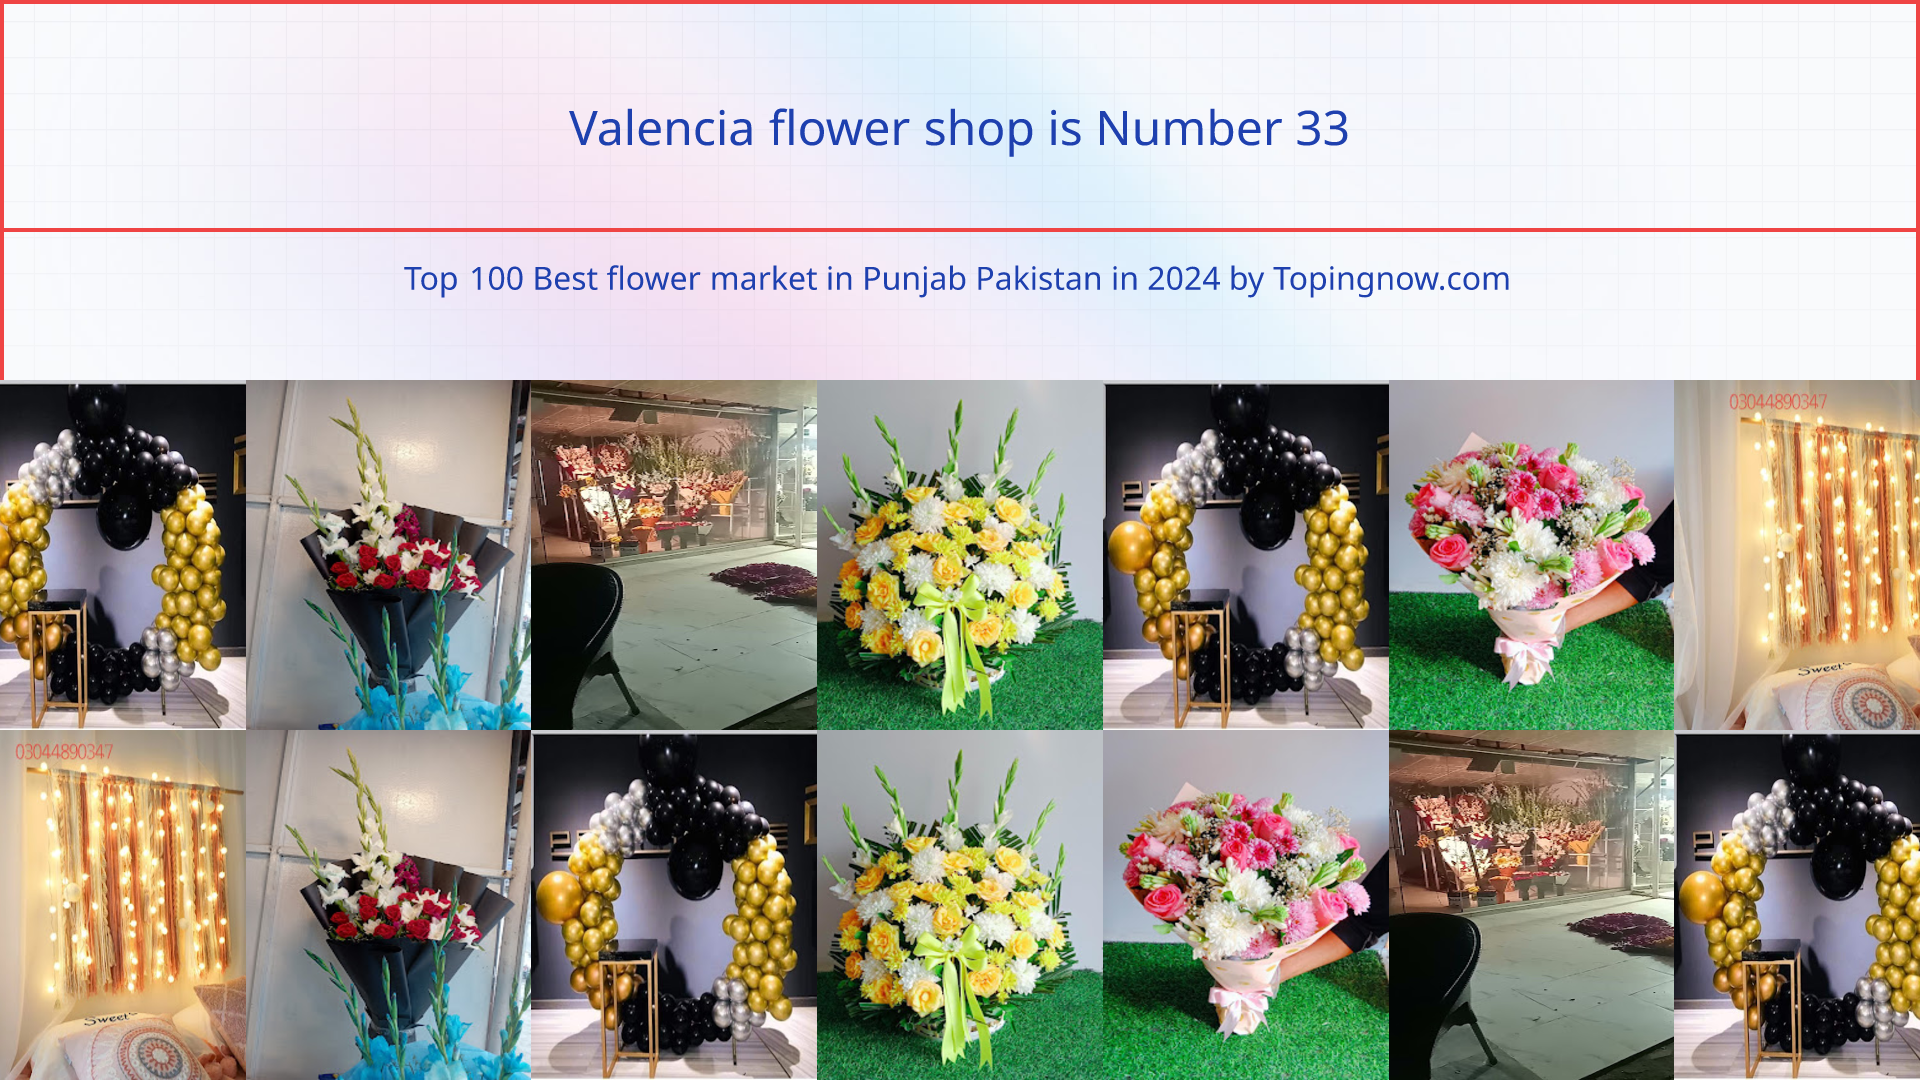 Valencia flower shop: Top 100 Best flower market in Punjab Pakistan in 2024